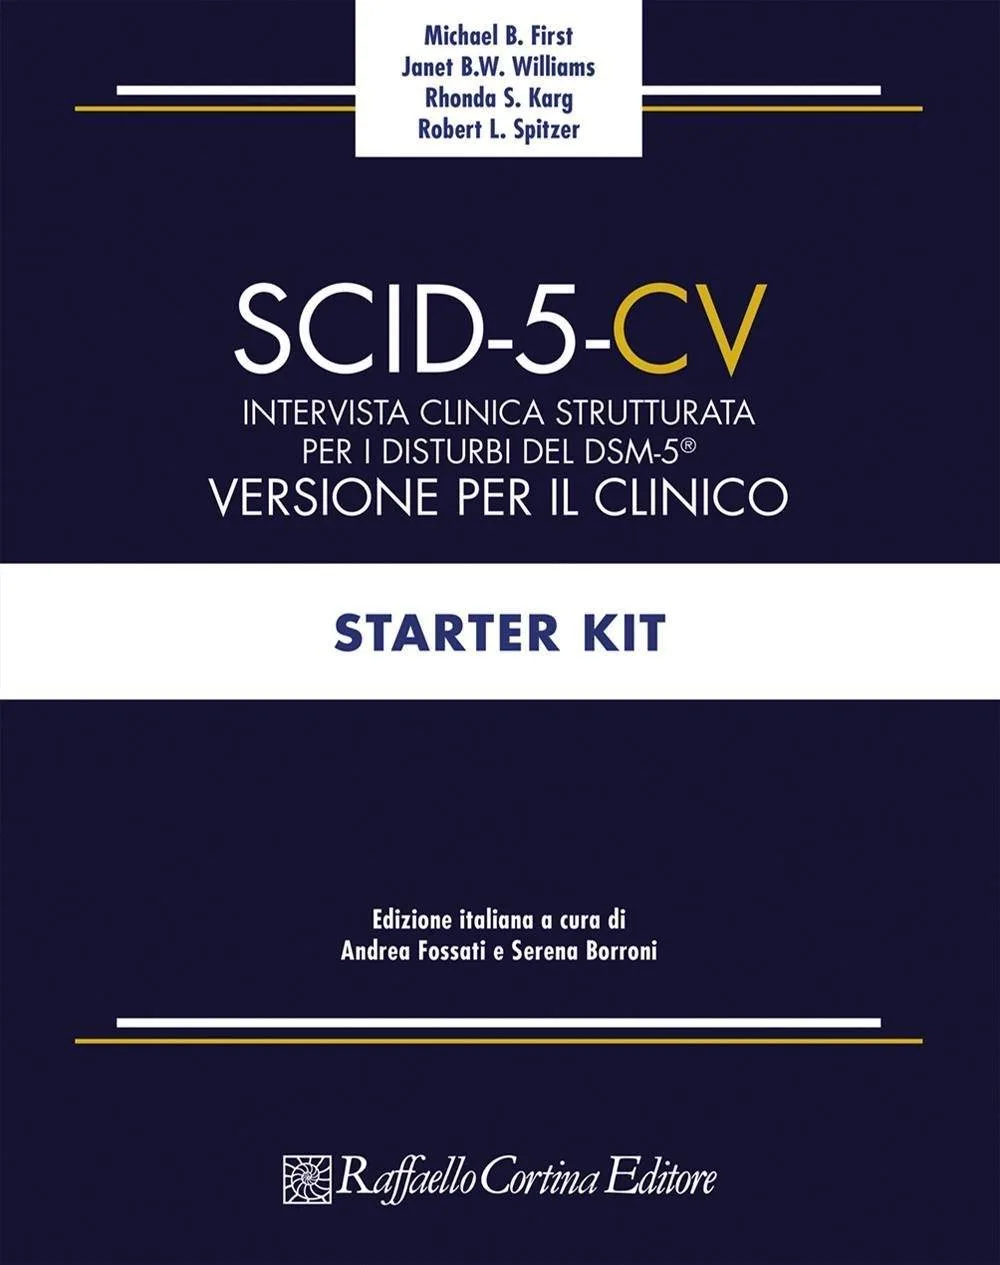 SCID-5 -CV: come formulare diagnosi secondo i criteri del DSM-5 - Psicologia